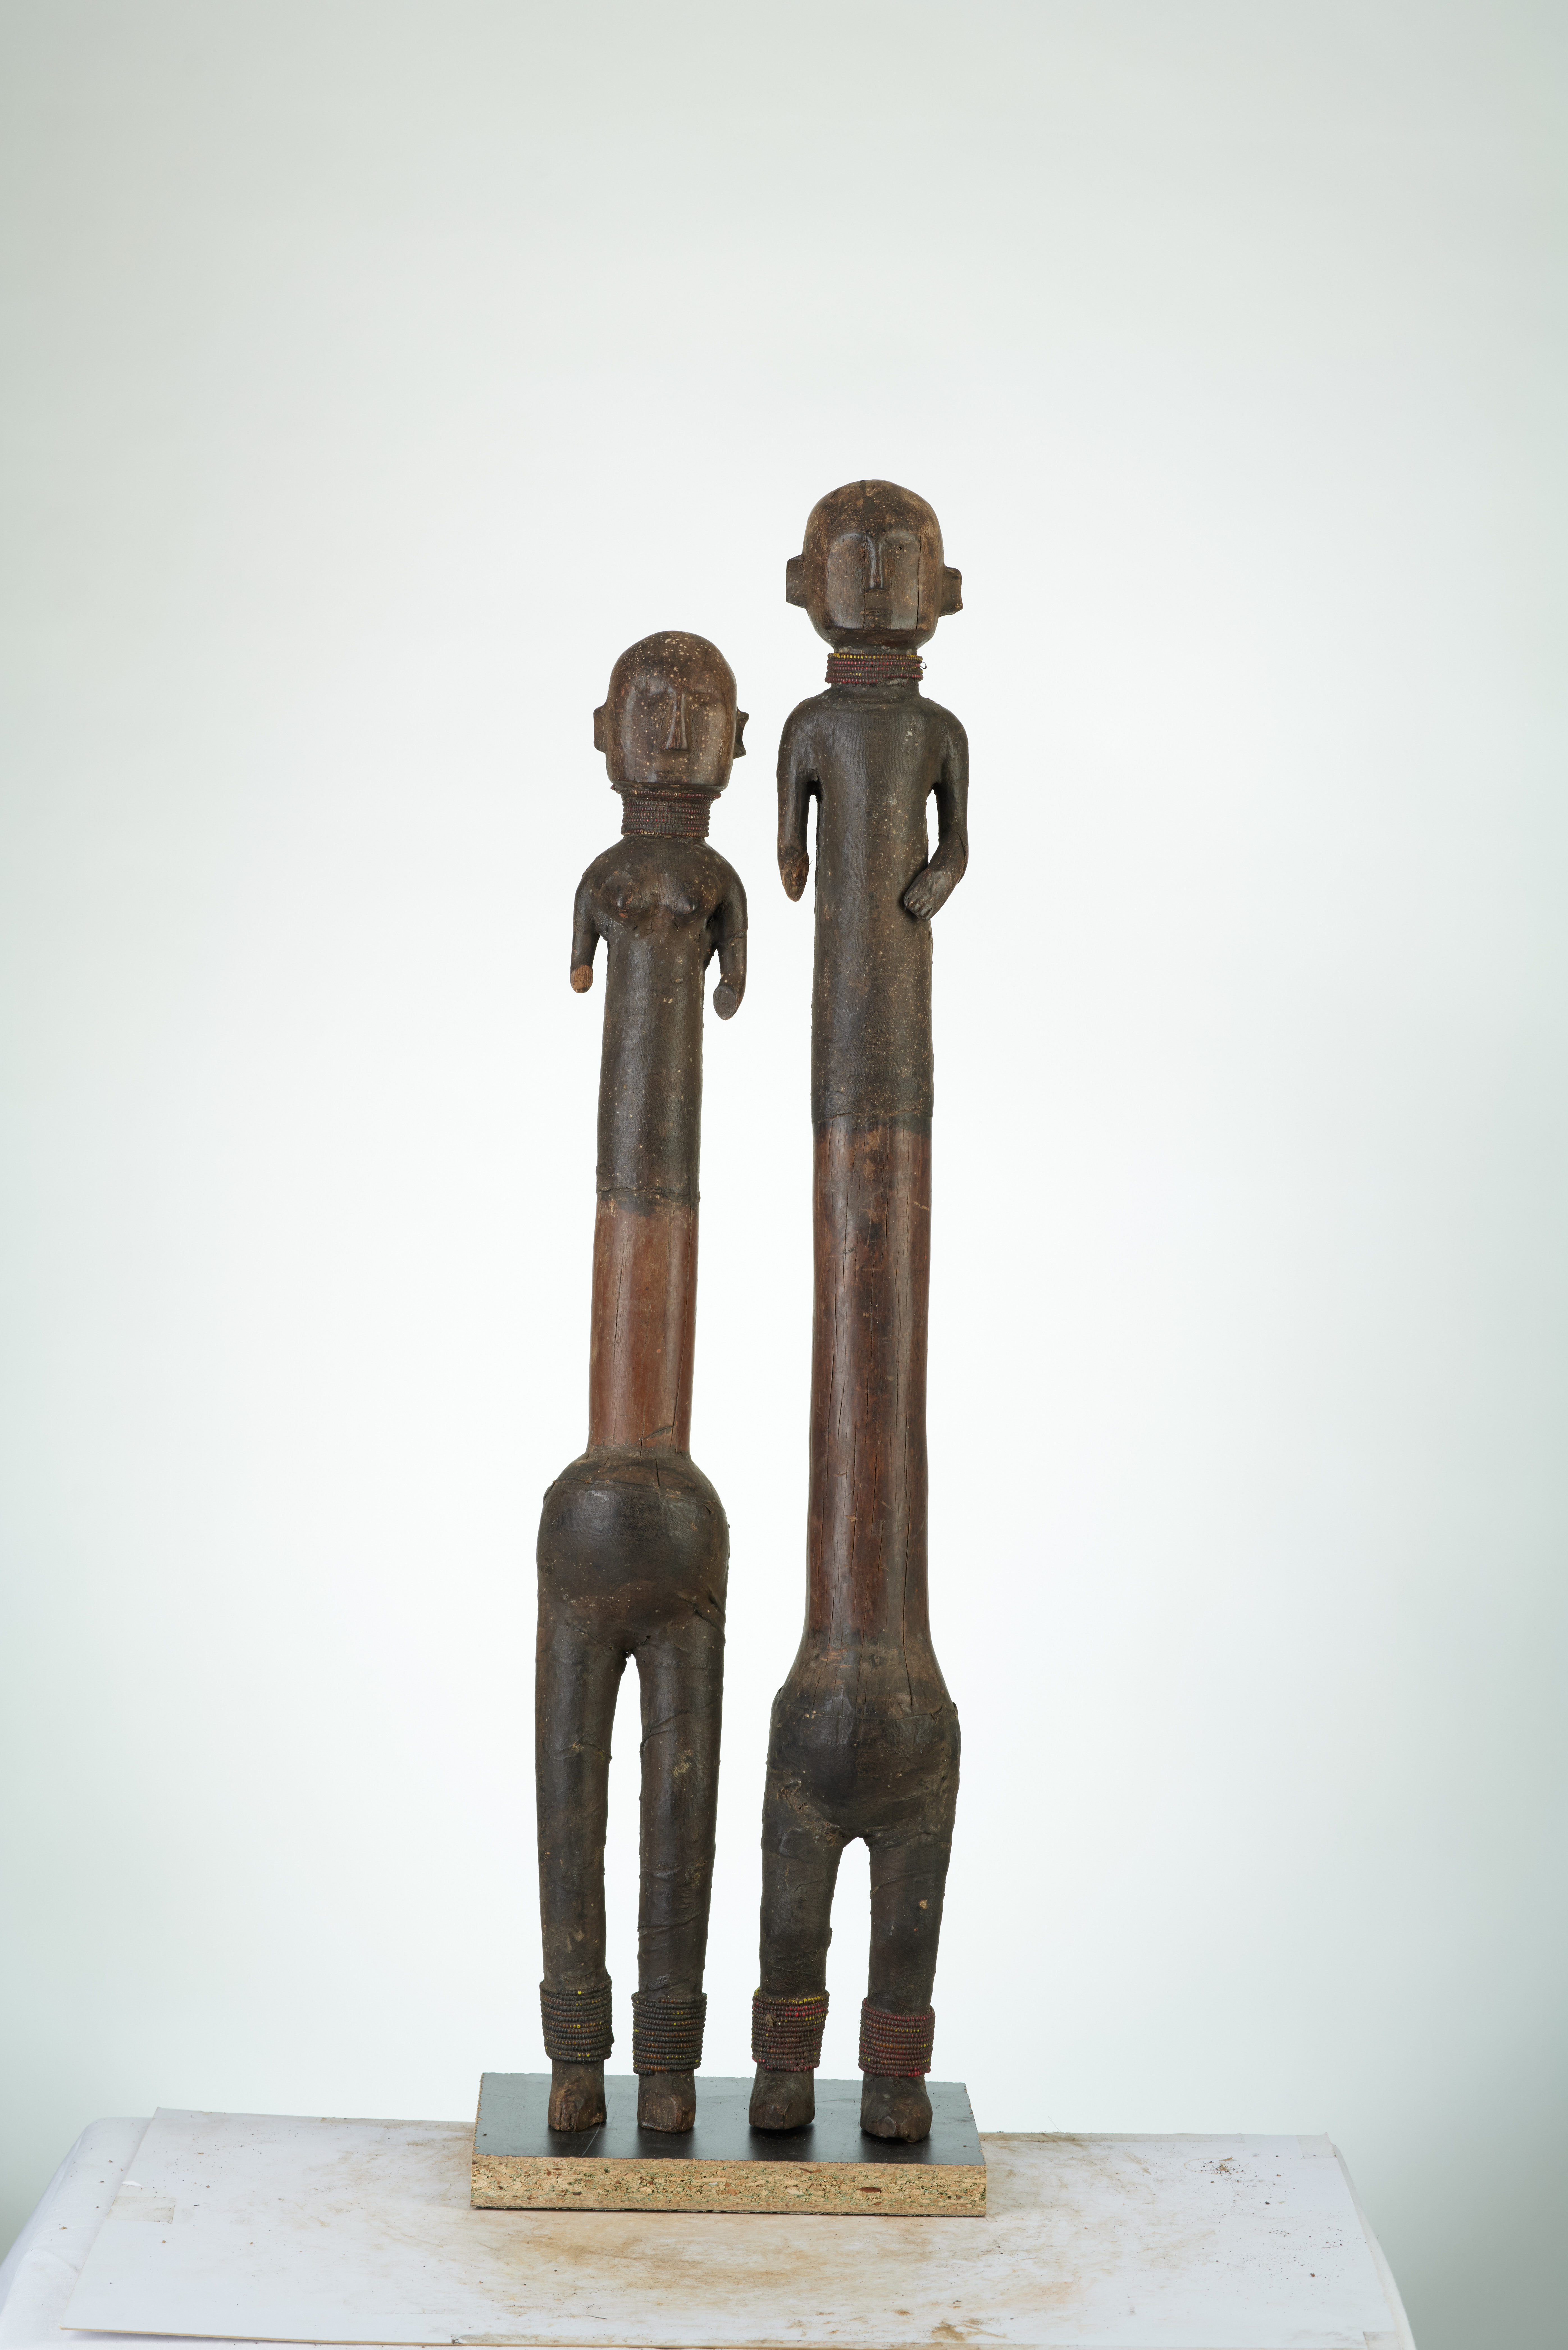 Zaramo(poupées), d`afrique : Tanzanie, statuette Zaramo(poupées), masque ancien africain Zaramo(poupées), art du Tanzanie - Art Africain, collection privées Belgique. Statue africaine de la tribu des Zaramo(poupées), provenant du Tanzanie, 1164/4377.Un couple de statuettes en bois
H.6Ocm.et 64cm.,recouvert de peau comme un débardeur par dessus les épaules et portant un pantalon en cuir par dessous. les statues portent des colliers de très fines perles autour du cou et autour des chevilles.Ces statues étaient données comme porte bonheur aux jeunes mariés.1ère moitié du 20eme sc.ils sont toujours par couple(pères blancs à Lille)Les ZARAMOS vivent en T&anzanie et la Région de DAR ESSALAM (Nafaya)

Een koppel houten beeldjes die gegeven worden als trouw geschenk om geluk te brengen.H.64cm. en 60cm..Ze rijn overtrokken met lederen vel en lederen broek en dragen fijne paleren halsnoeren aan de hals en de henkels. 1ste helft 20ste eeuw.Witte paters in  Rijsel.). art,culture,masque,statue,statuette,pot,ivoire,exposition,expo,masque original,masques,statues,statuettes,pots,expositions,expo,masques originaux,collectionneur d`art,art africain,culture africaine,masque africain,statue africaine,statuette africaine,pot africain,ivoire africain,exposition africain,expo africain,masque origina africainl,masques africains,statues africaines,statuettes africaines,pots africains,expositions africaines,expo africaines,masques originaux  africains,collectionneur d`art africain